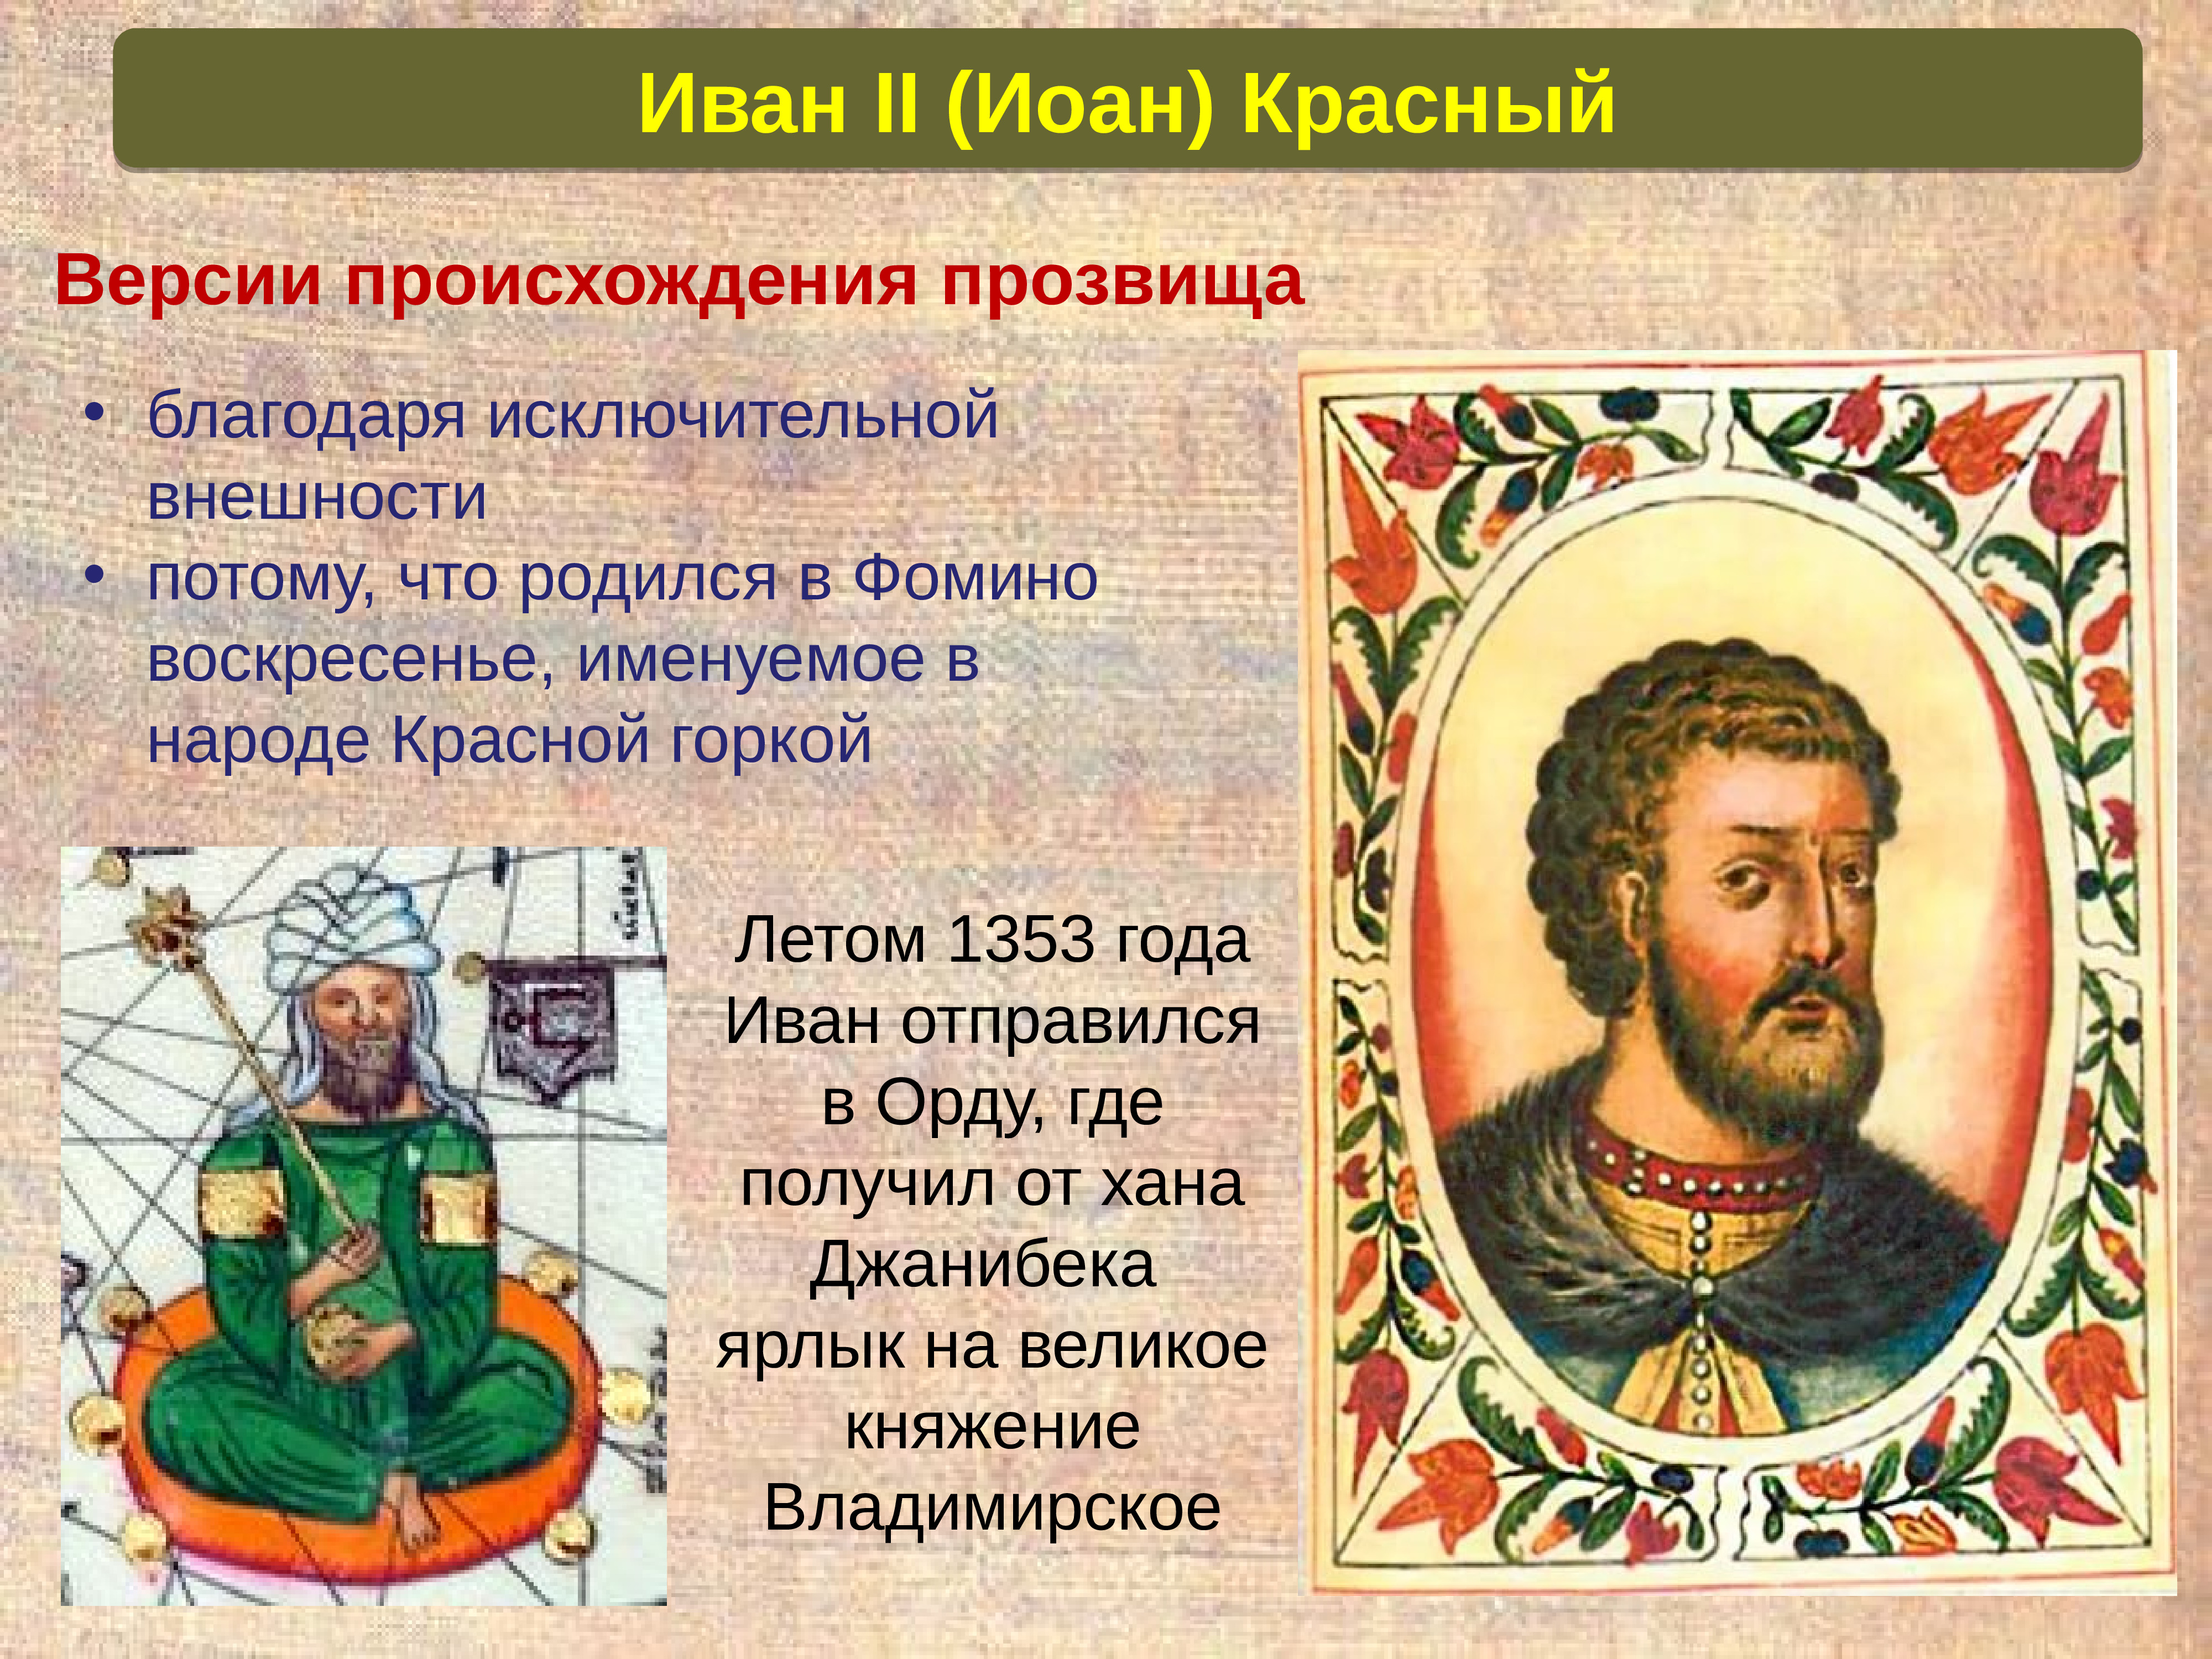 Первый московский князь получивший ярлык на великое. Московские князья 1276 1598.